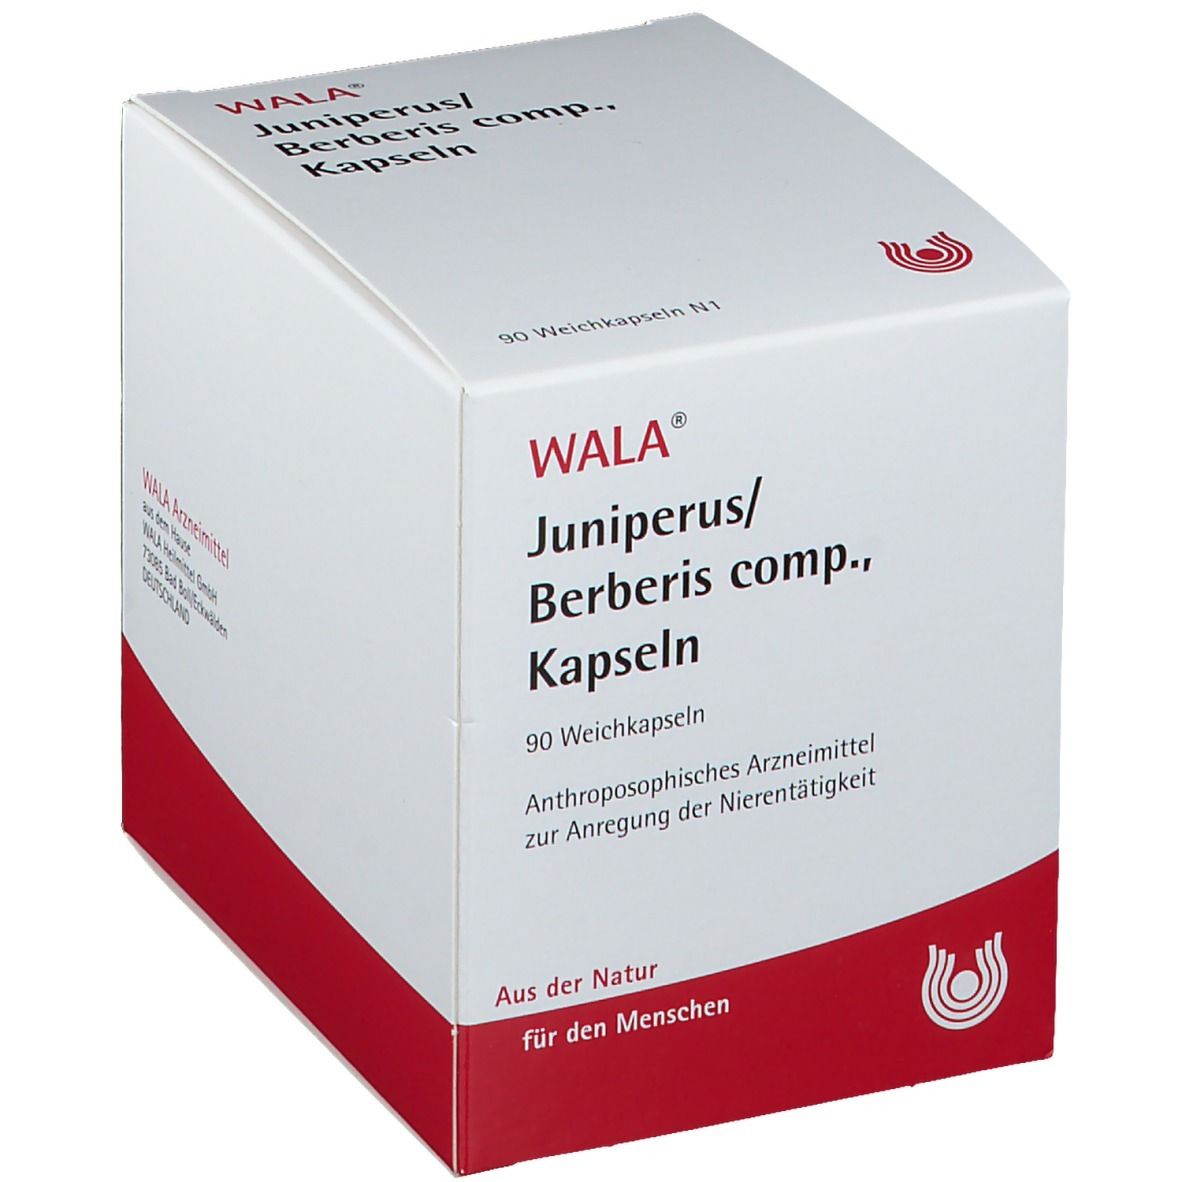 WALA® JUNIPERUS/BERBERIS comp. Kapseln